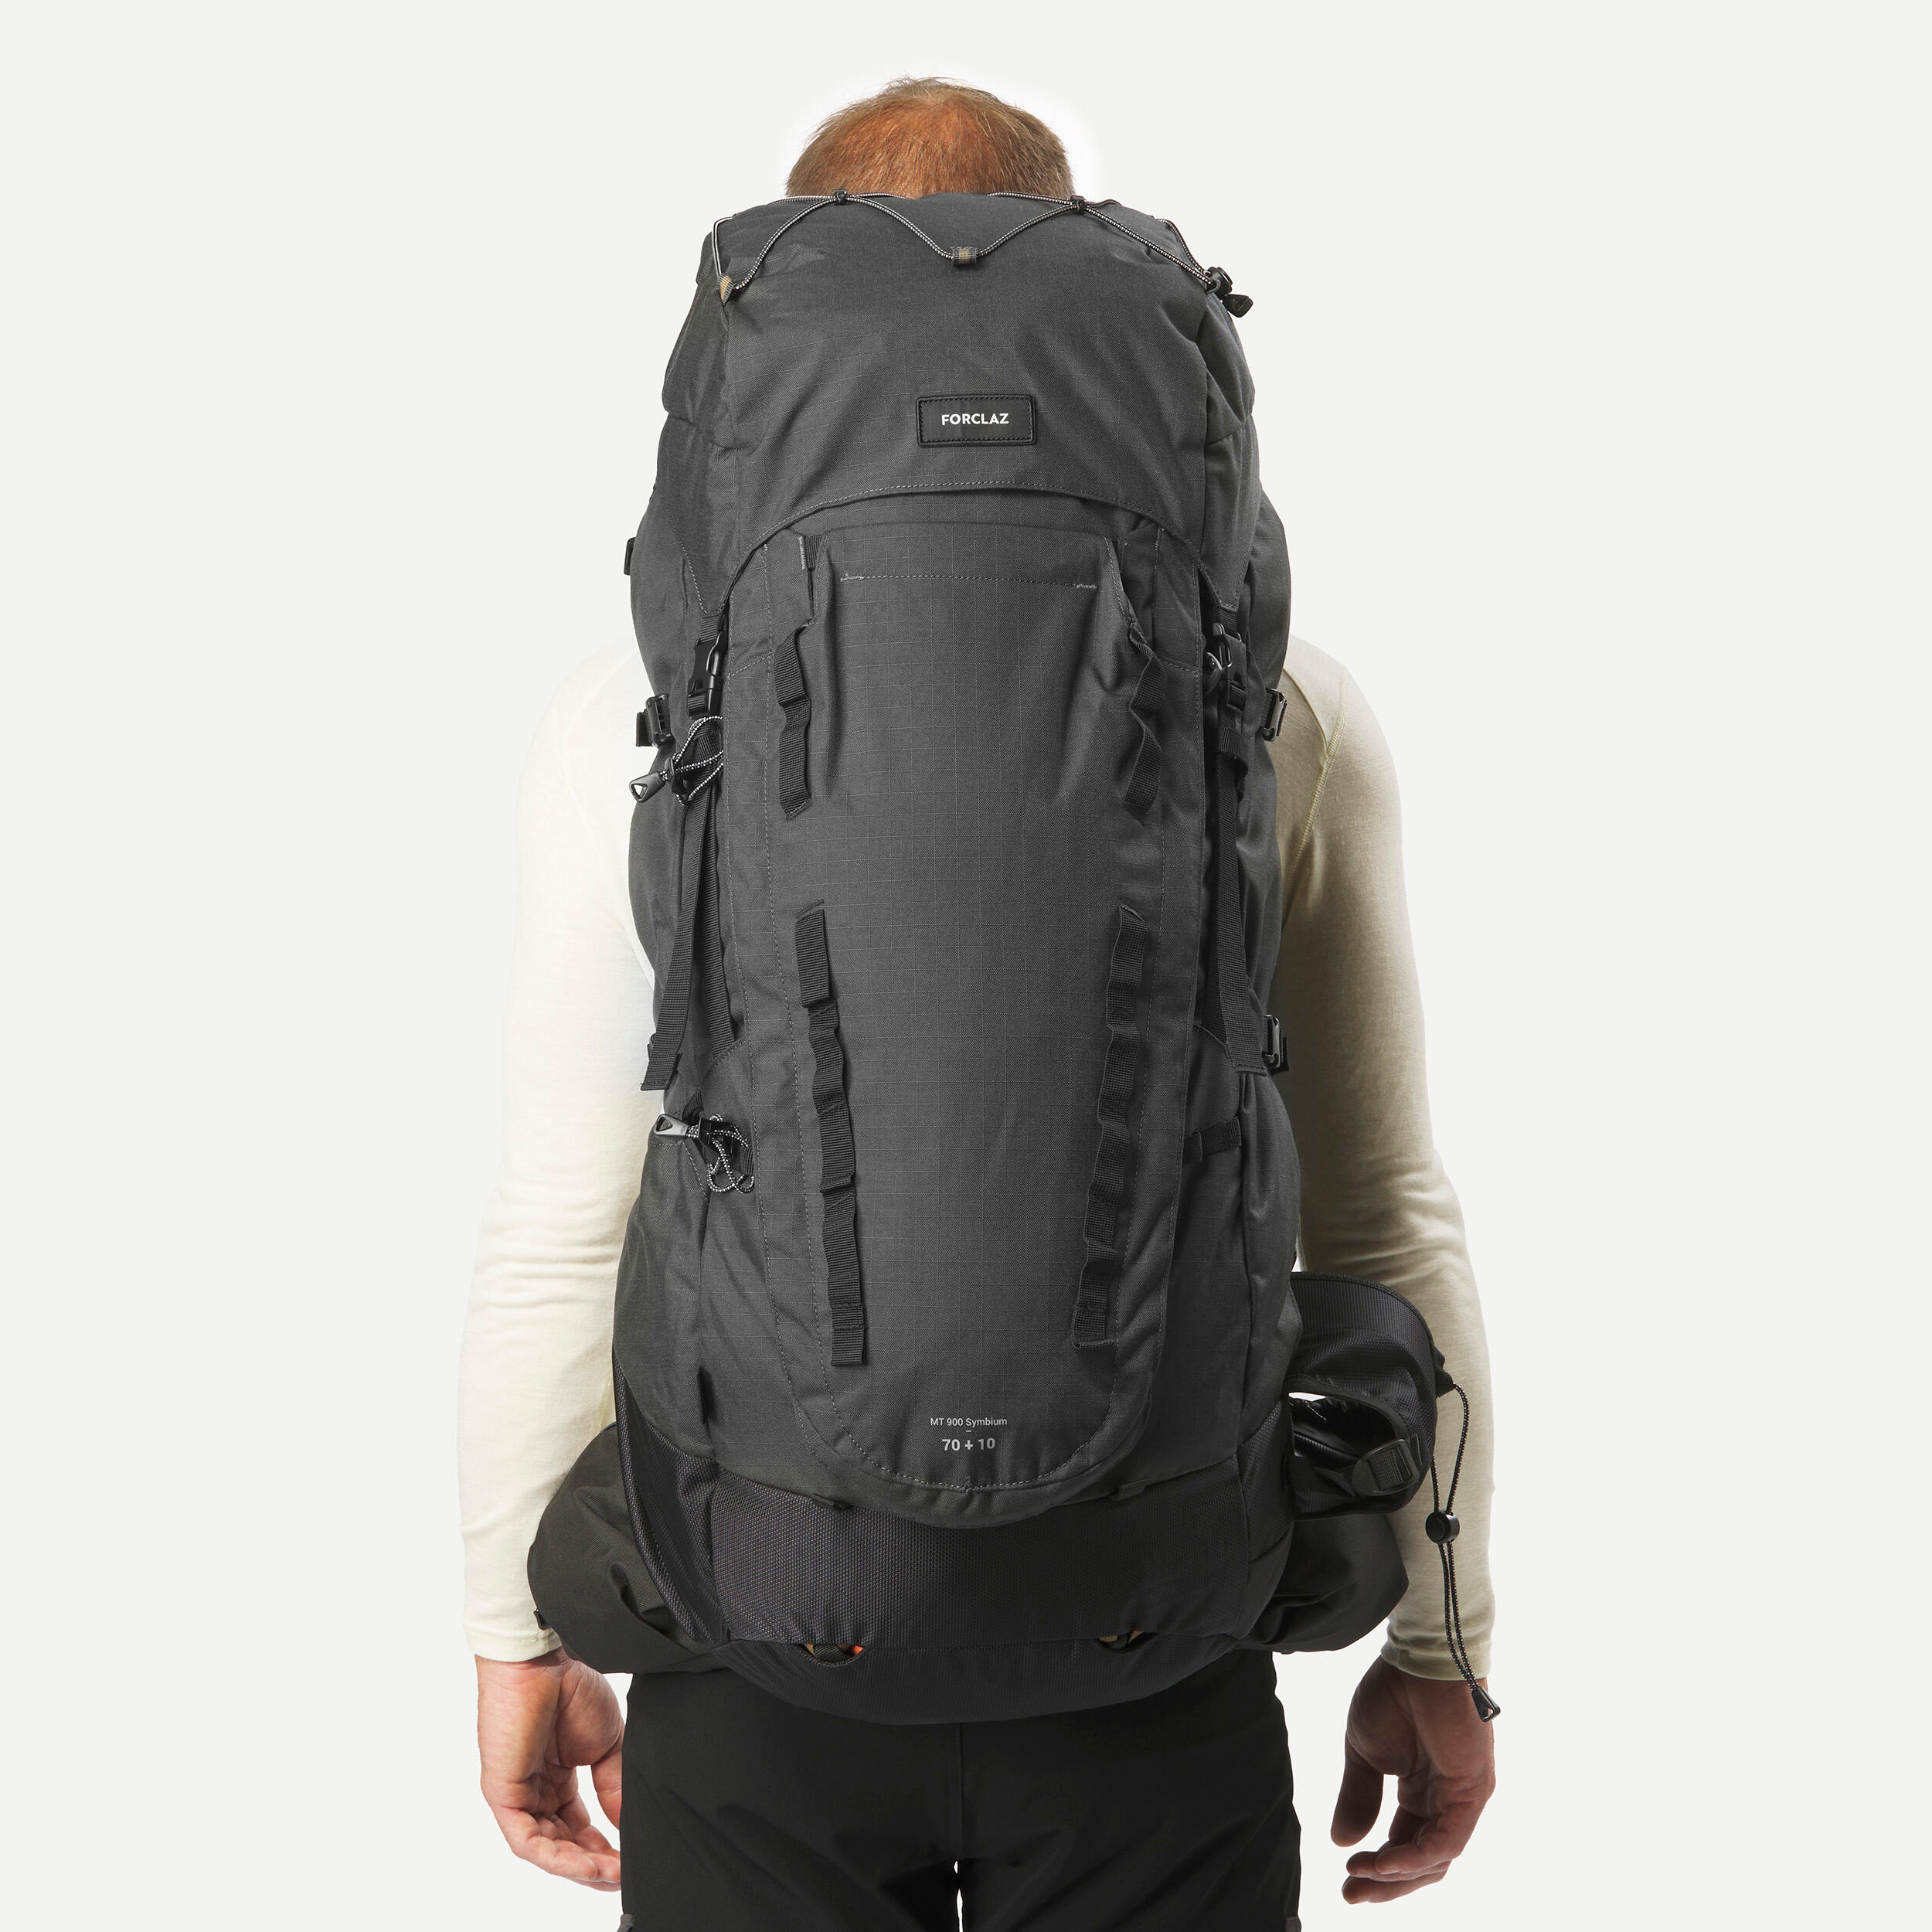 Men’s 70 L + 10 L Hiking Backpack - MT 900